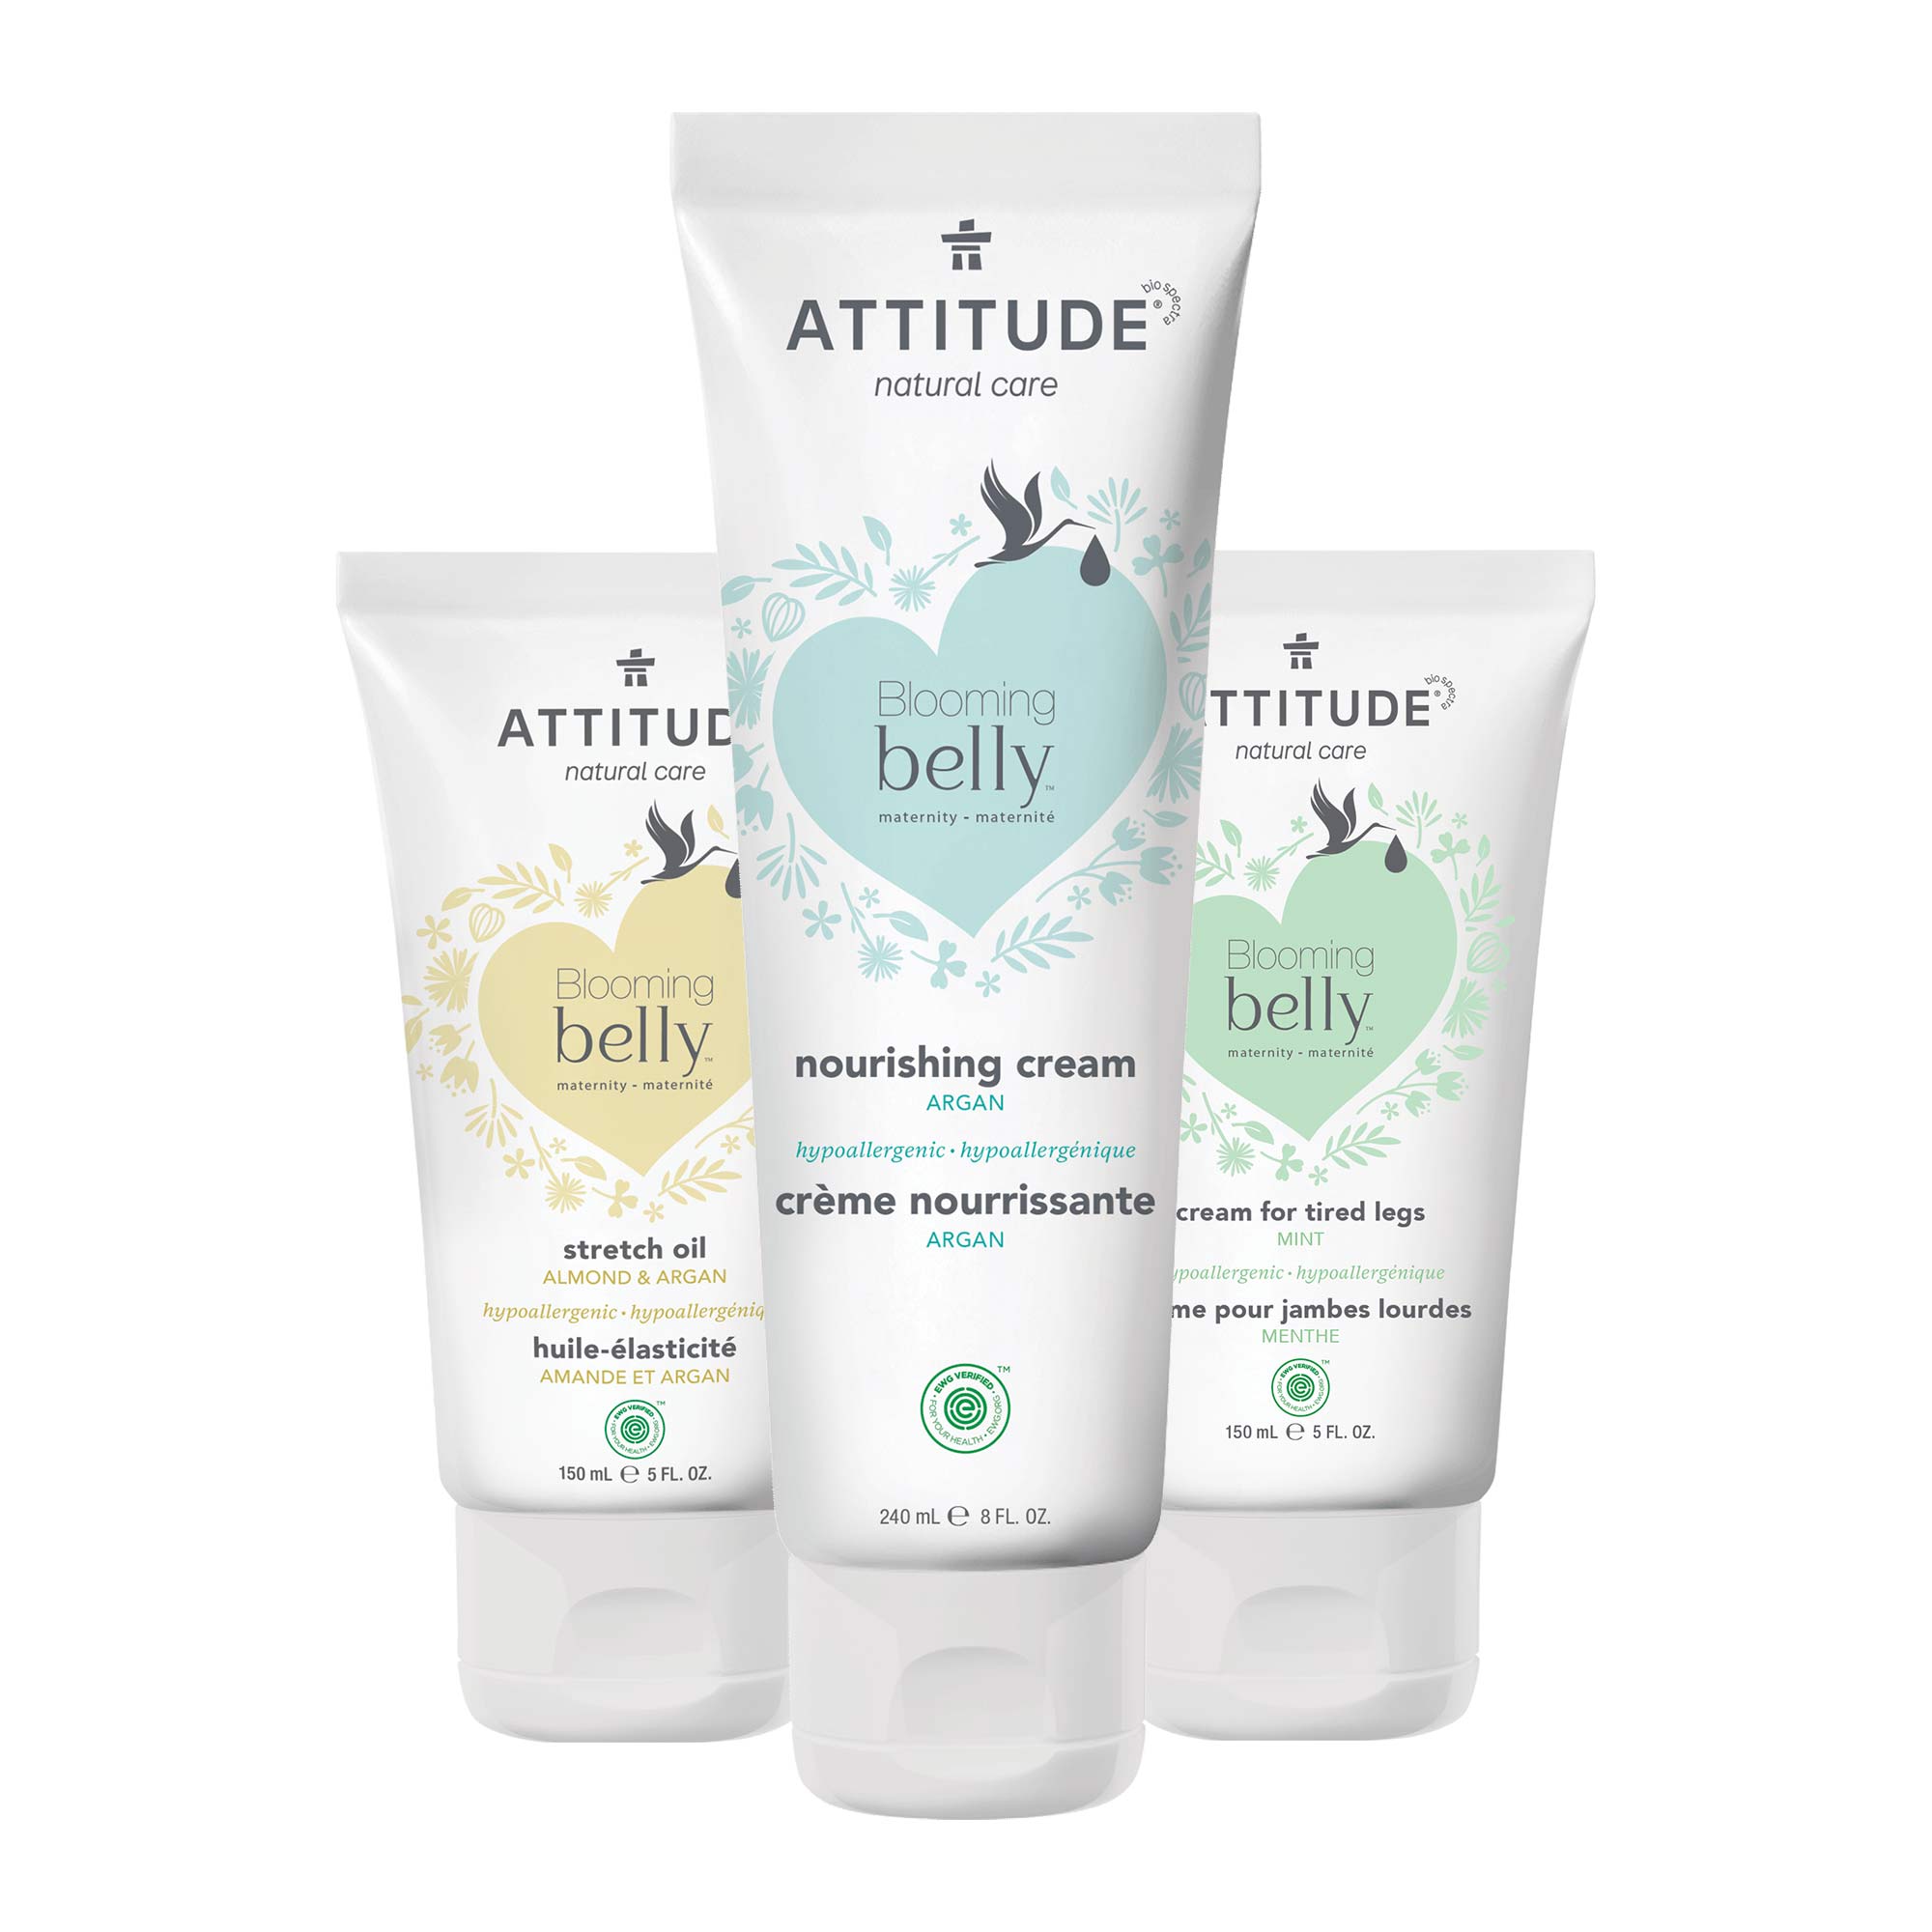 ATTITUDE Blooming belly™ Body Cream Trio : Pregnancy safe BDL_a80_18111-18191-18120_en?_main?